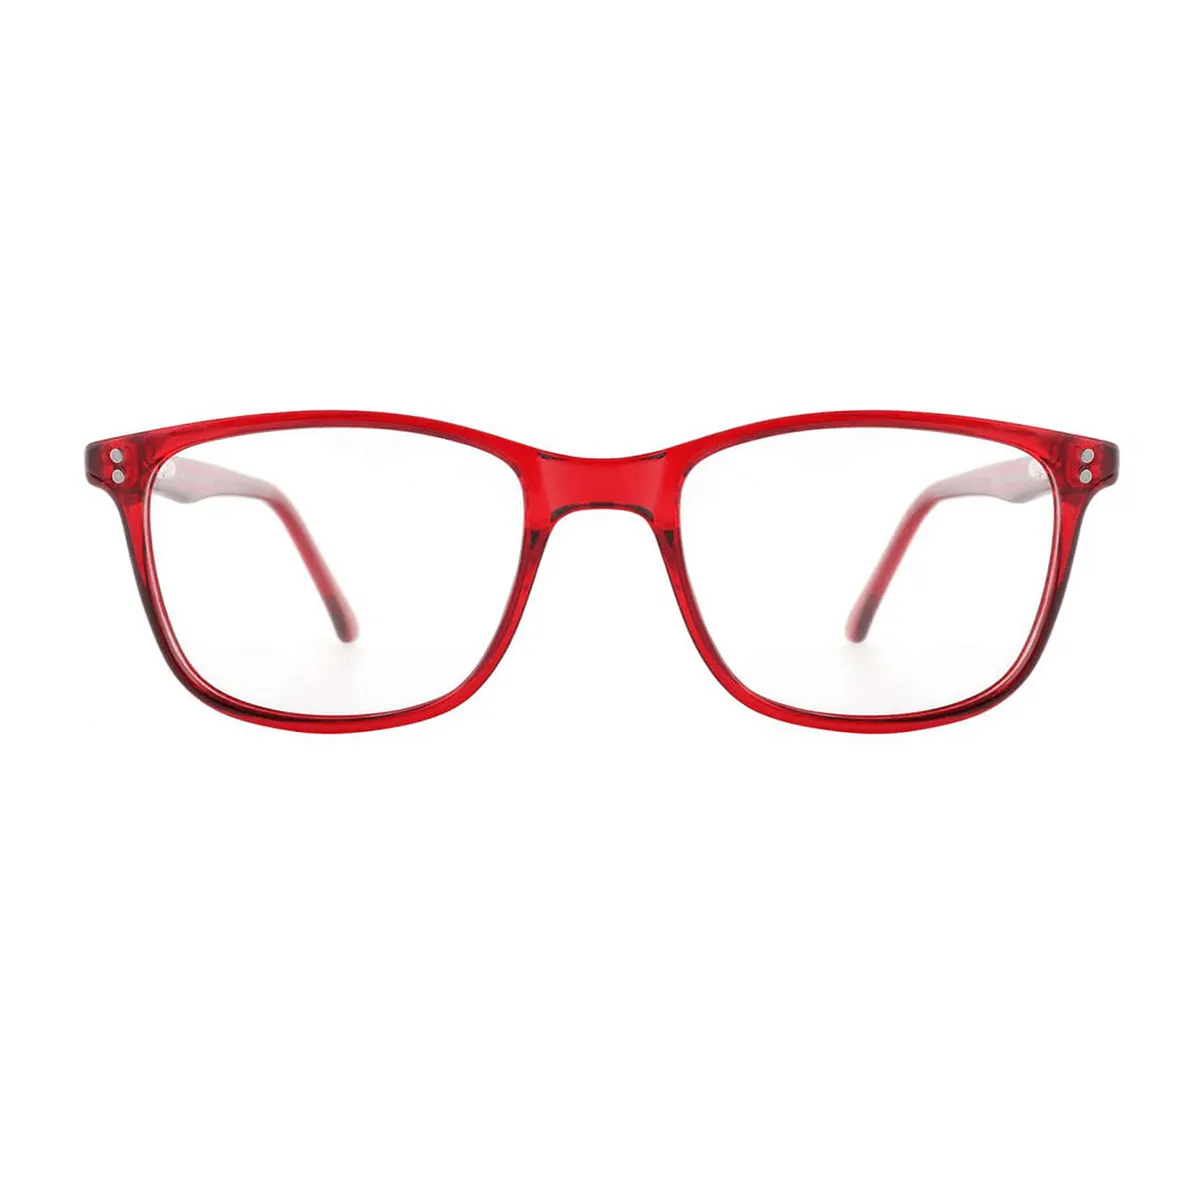 Melissa - Square Red Reading glasses for Men & Women